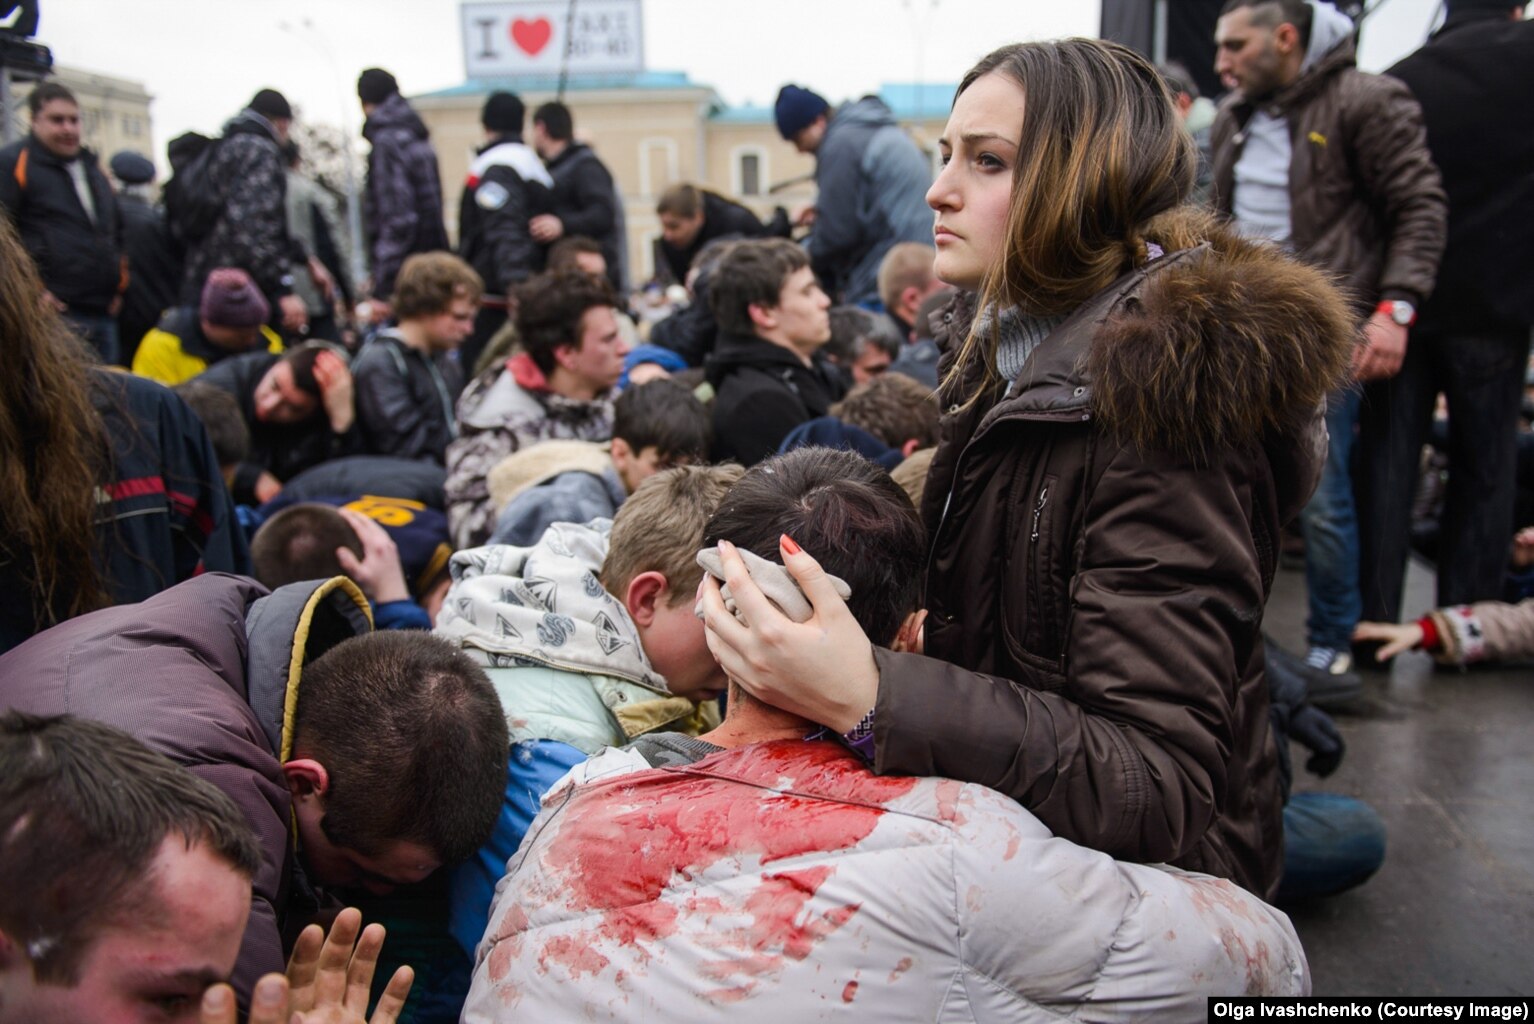 Mbështetësit e plagosur të qeverisë së re të Ukrainës u detyruan të gjunjëzoheshin në sheshin e Harkivit nga turmat proruse më 1 mars 2014. Protestat e Euromaidan-it kishin rrëzuar presidentin e Ukrainës që ishte proKremlinit, Viktor Janukoviq, nga pushteti disa ditë më parë.